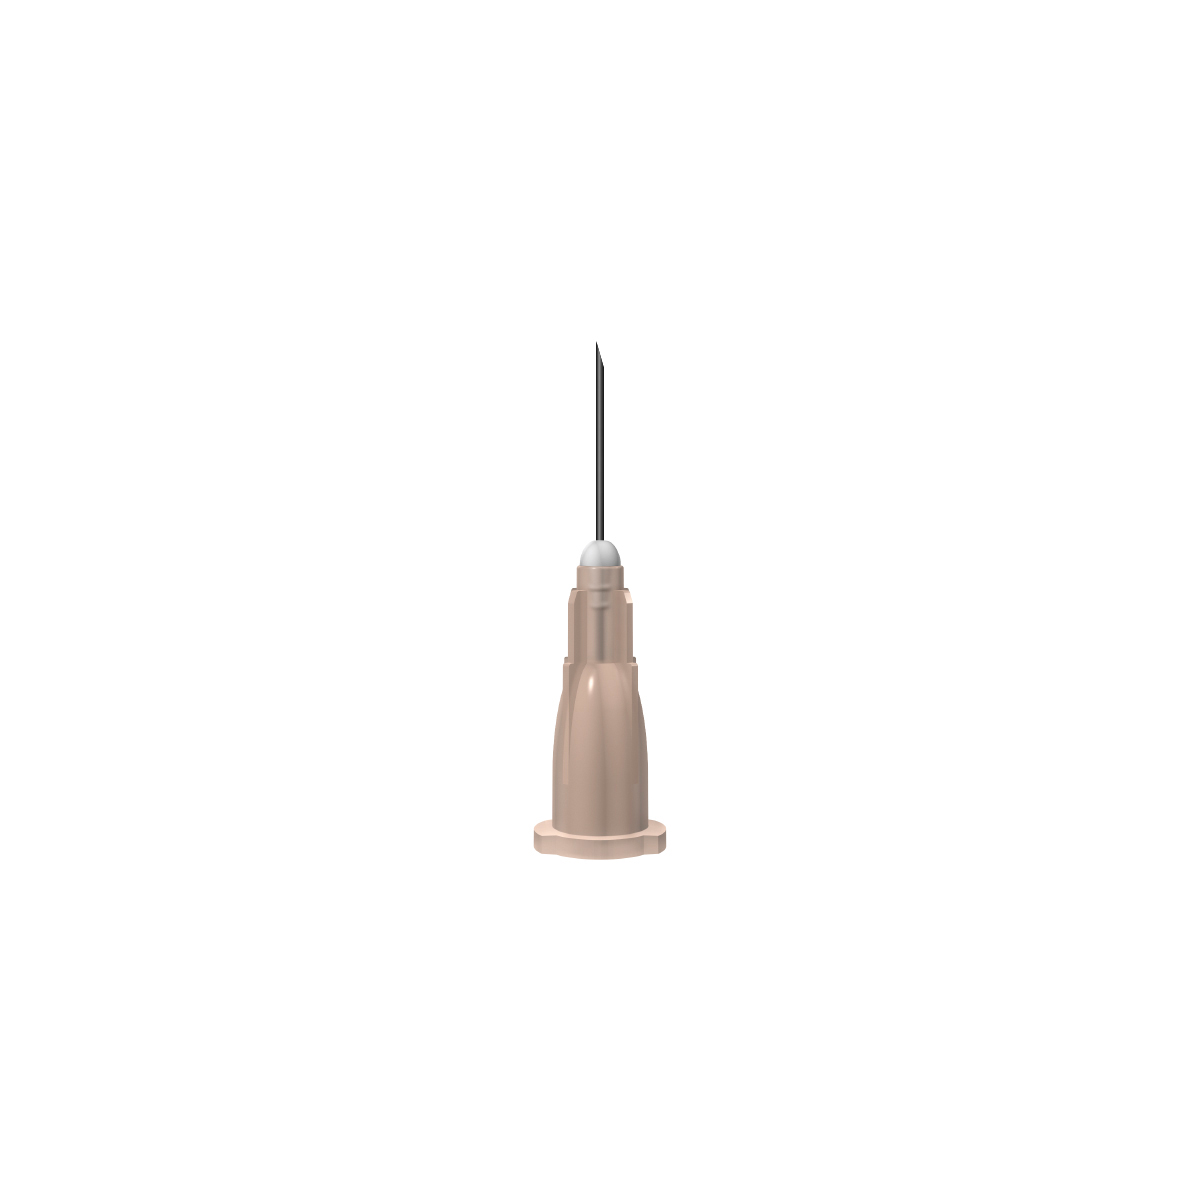 Unisharp: Brown 26G 13mm (½ inch) needle